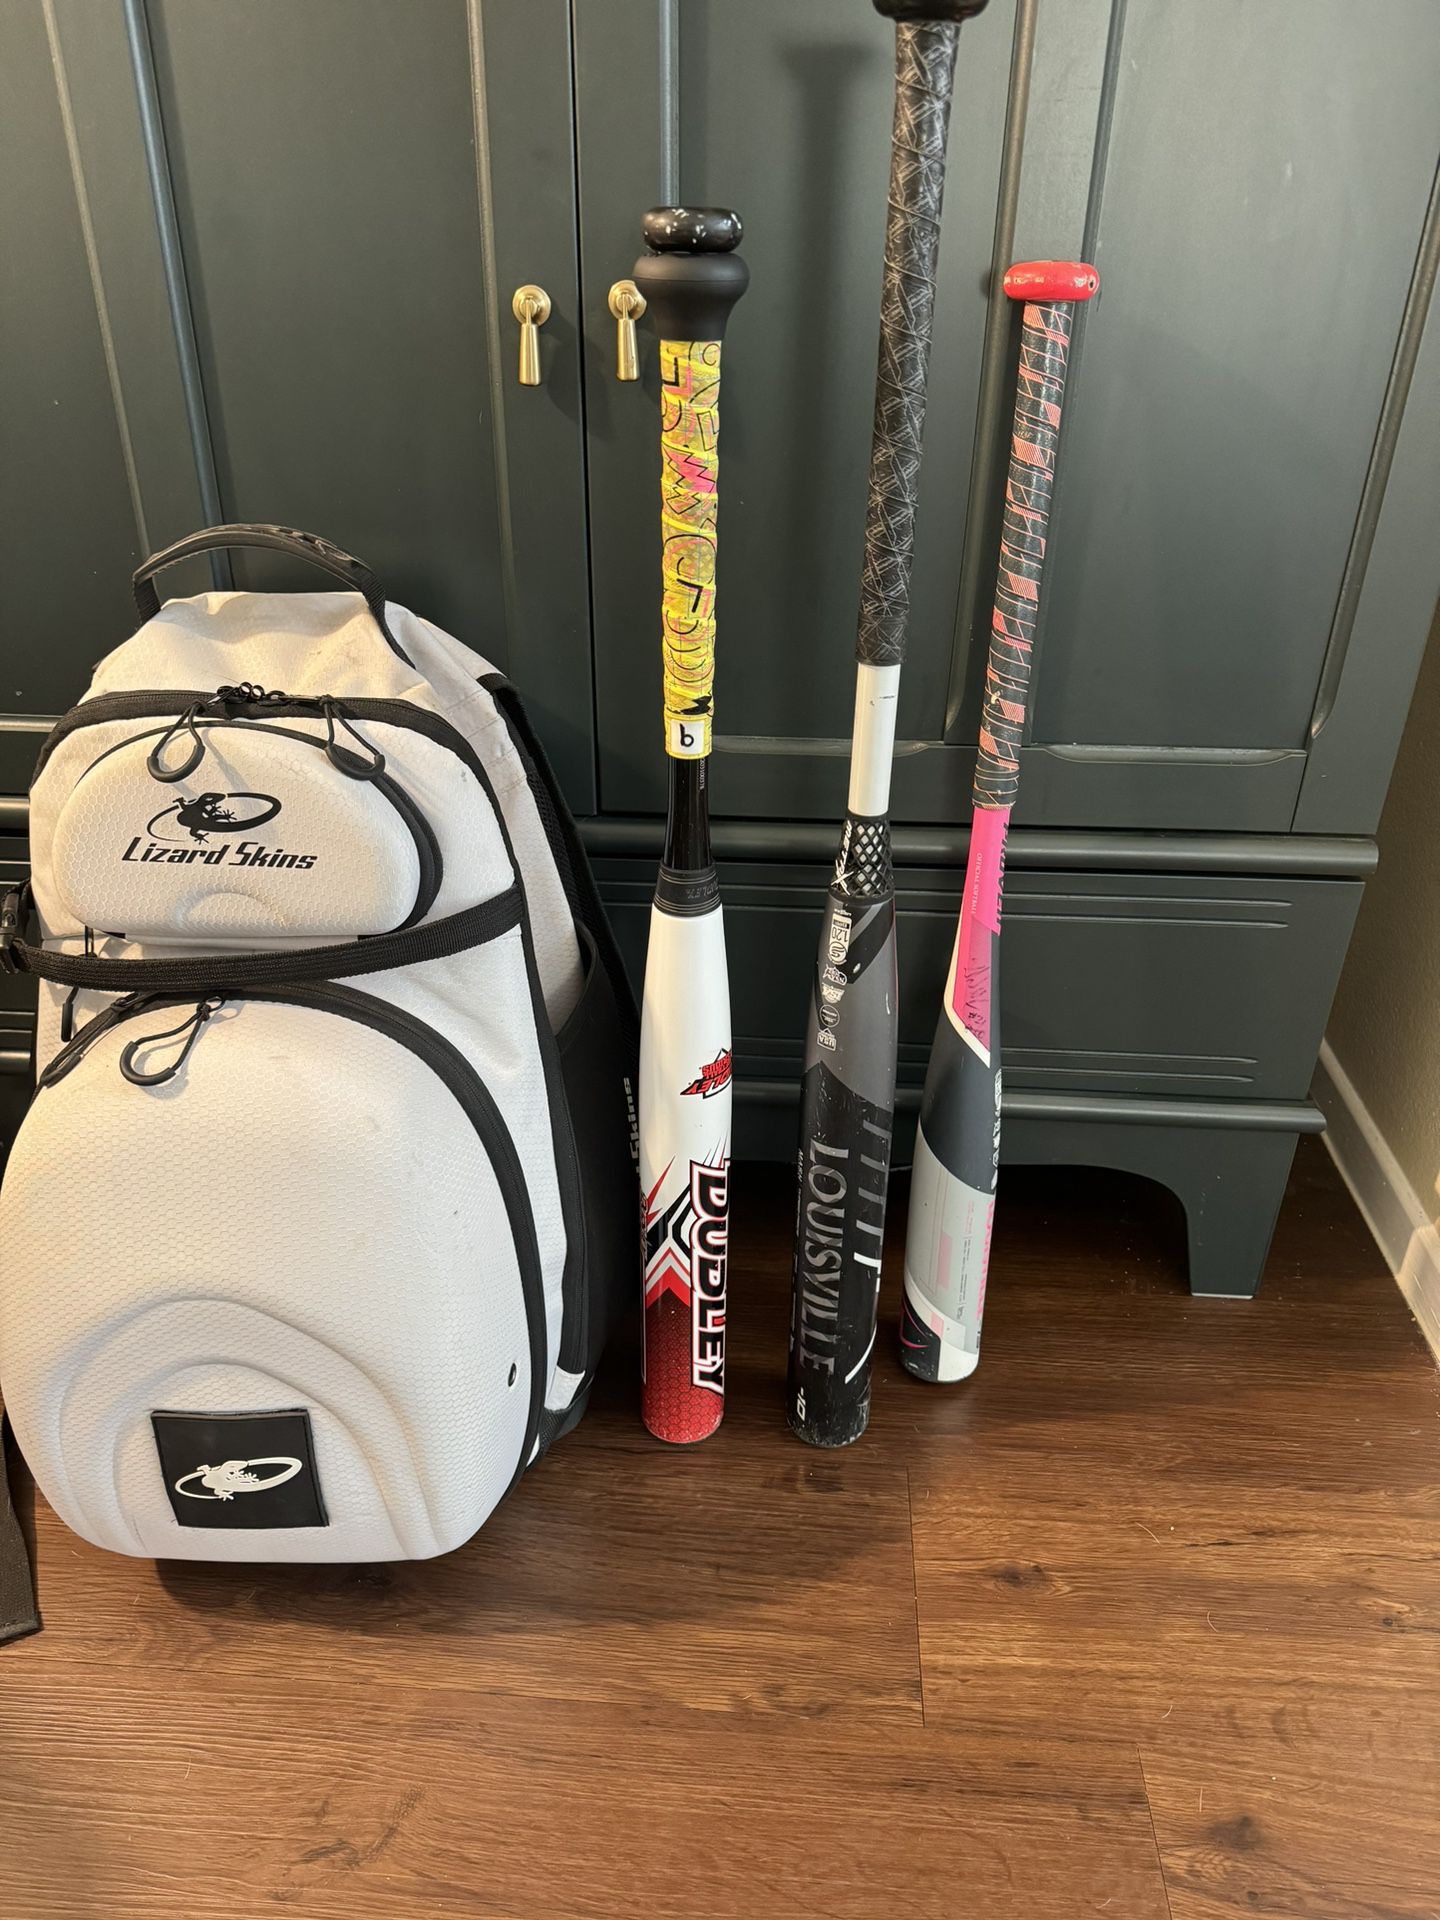 Softball Bats And Bag For Sale 